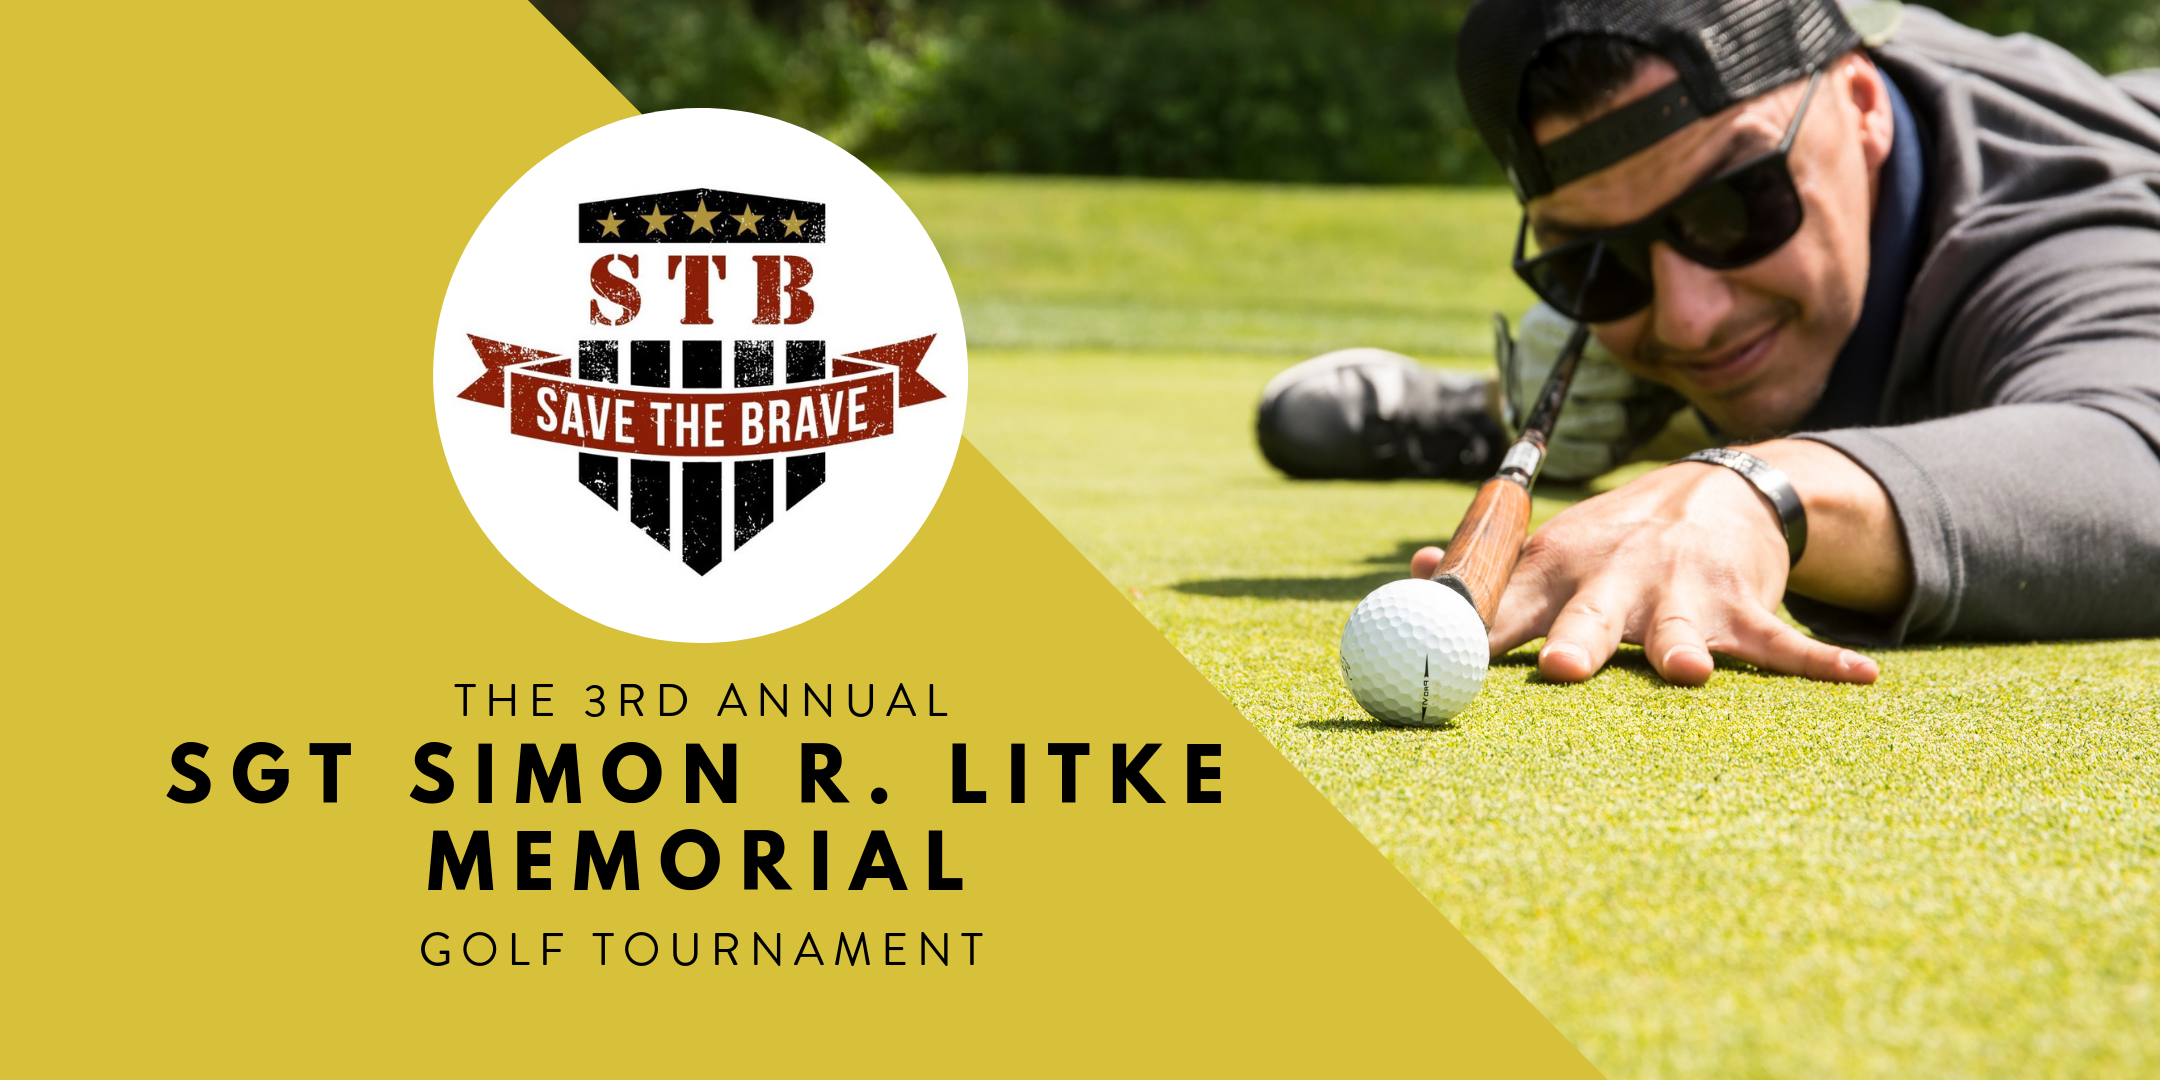 3rd Annual Sgt Simon R. Litke Memorial Golf Tournament